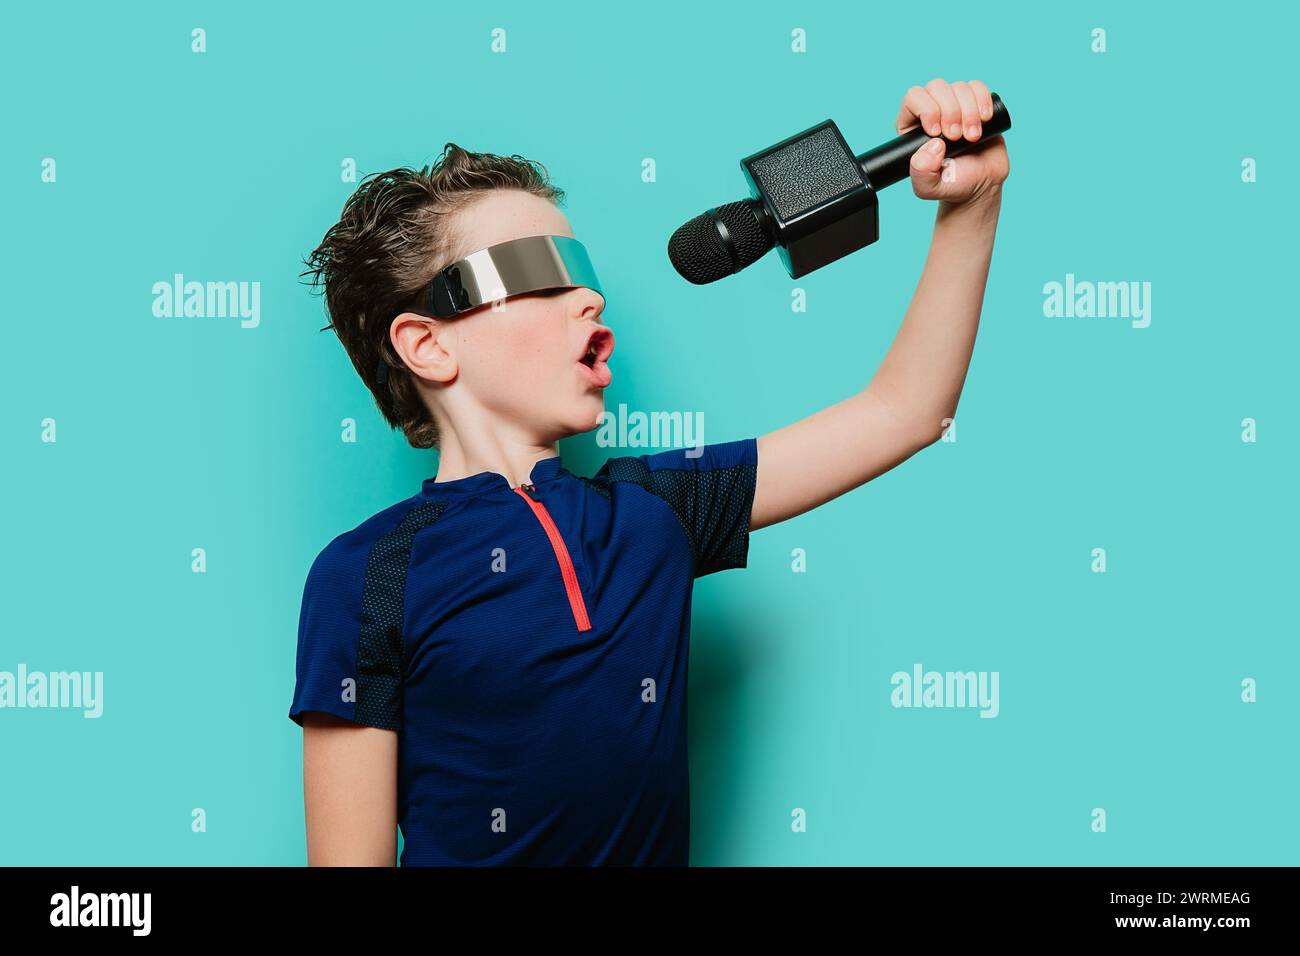 Un ragazzo energico con visiera futuristica e top sportivo sfoggia una melodia, quasi sul palco con uno sfondo color ottanio Foto Stock